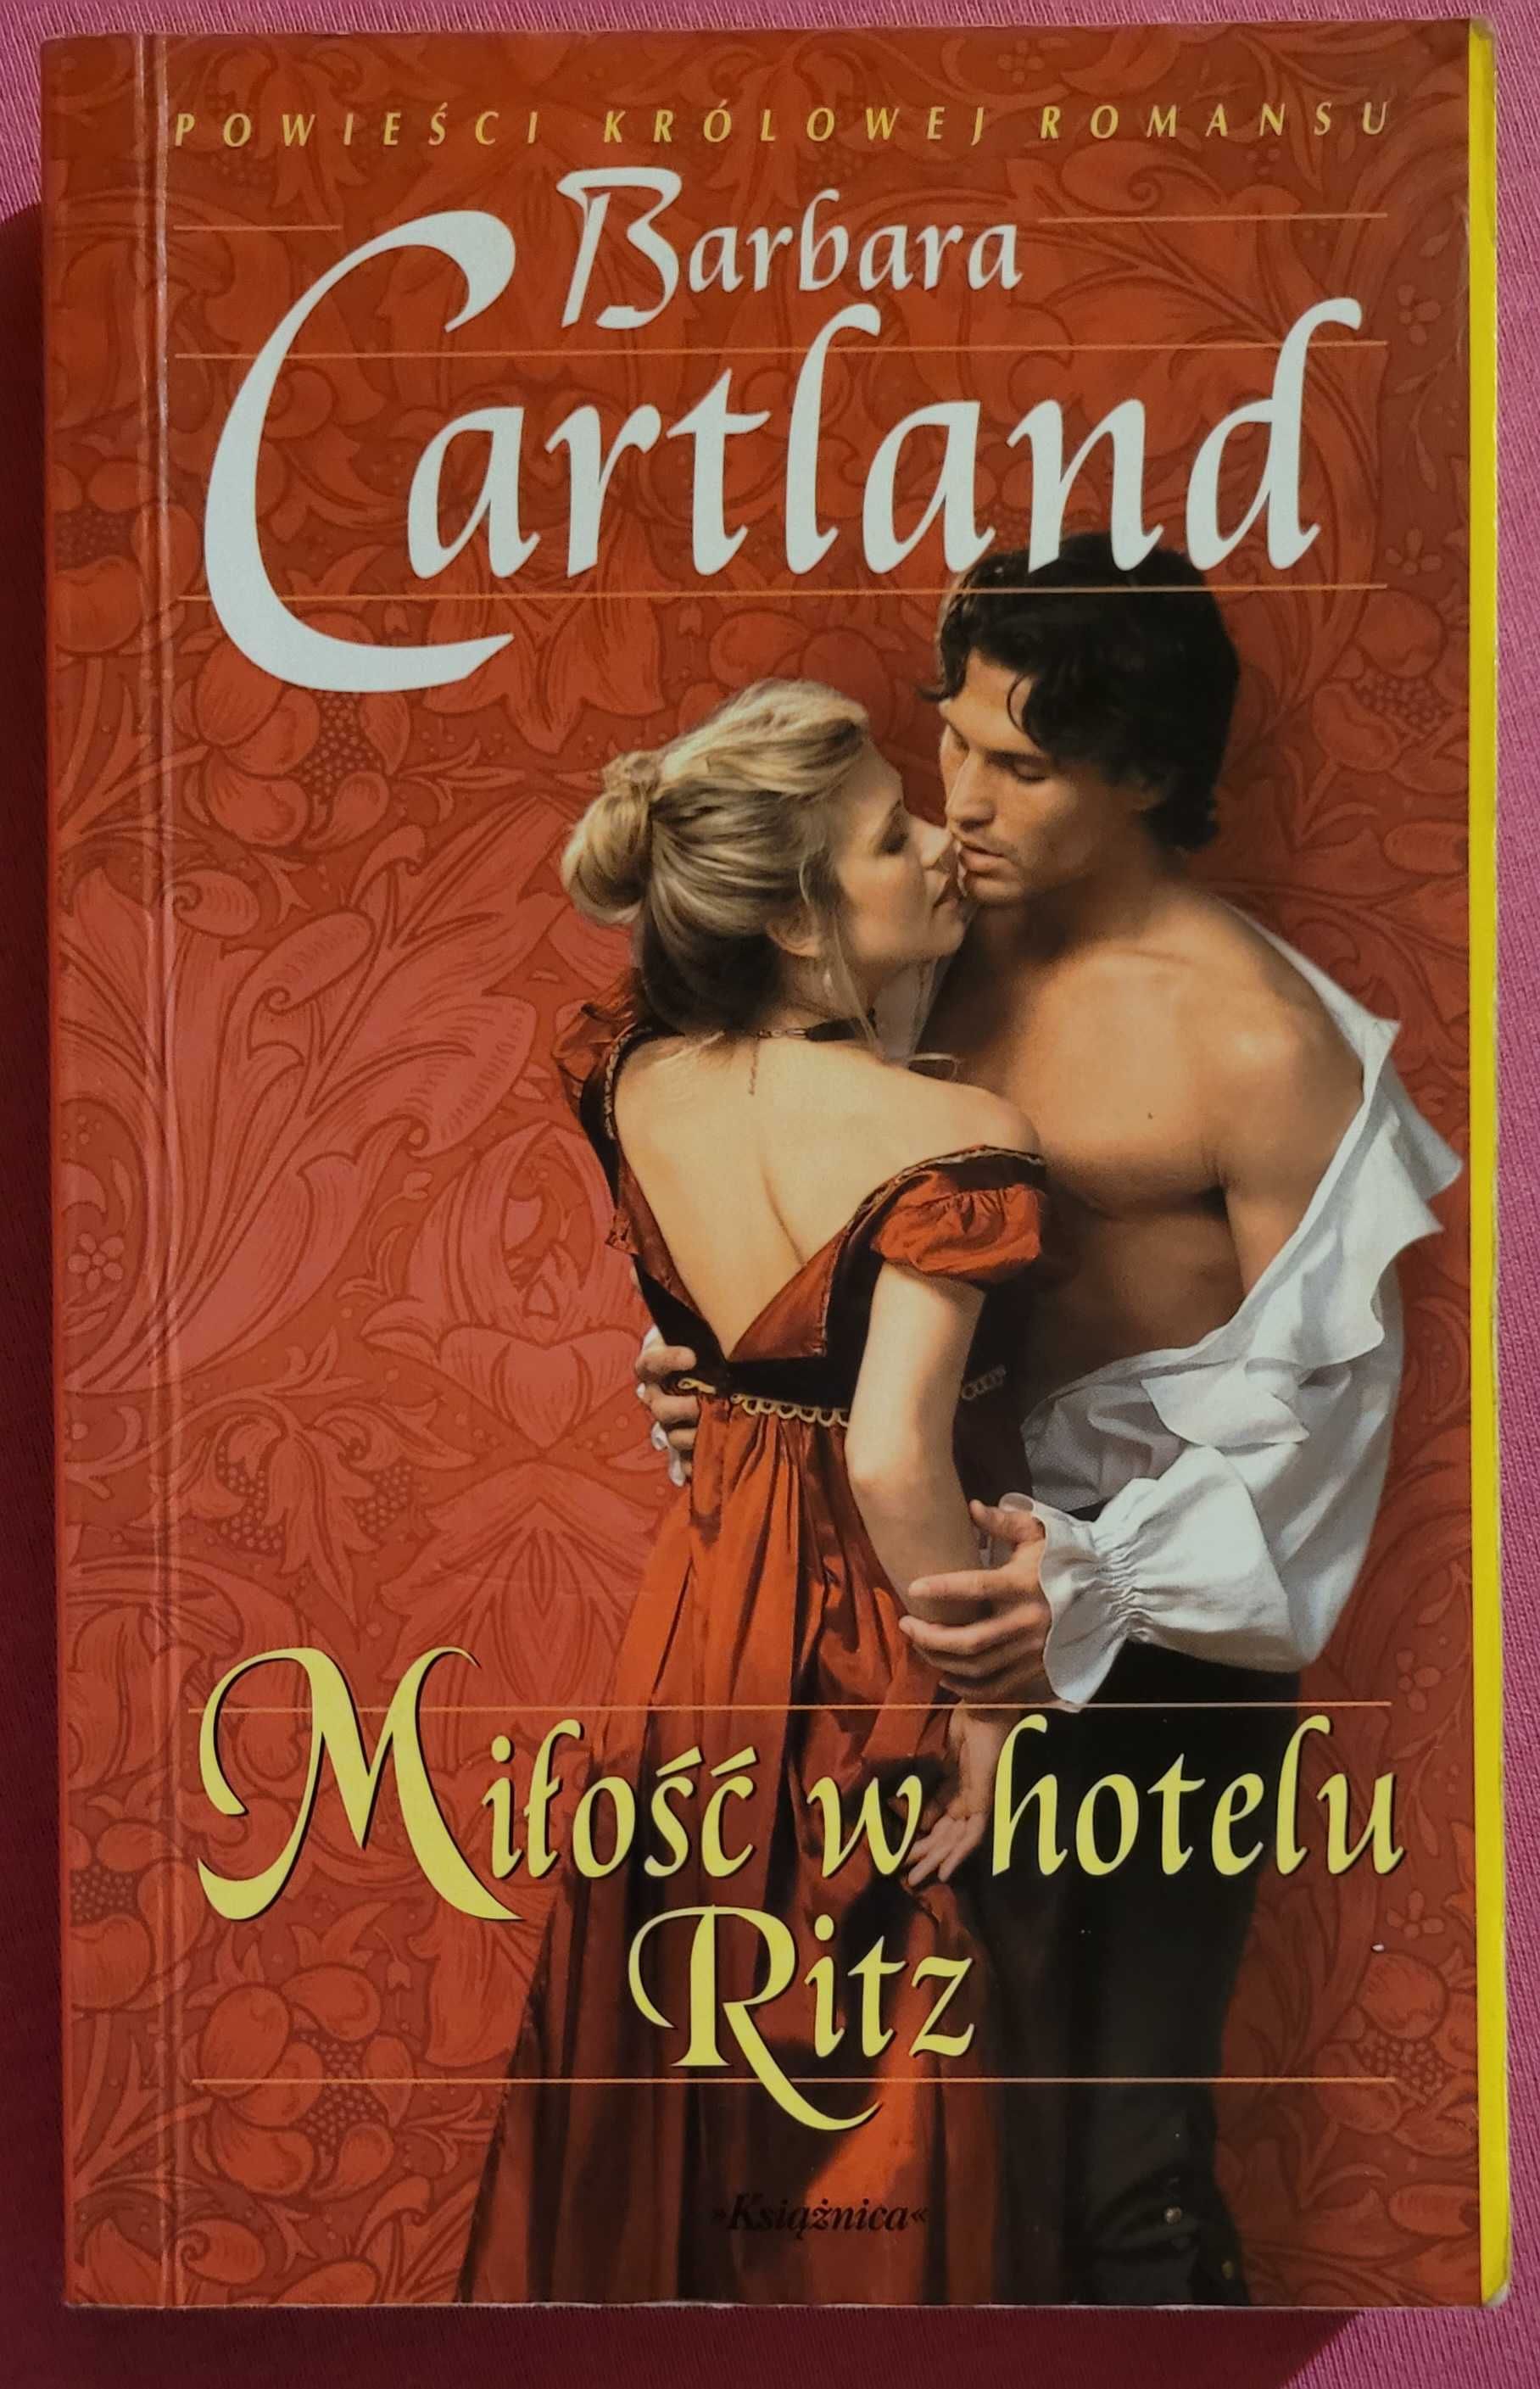 Romans historyczny "Milosc w hotelu Ritz" autor Barbara CARTLAND